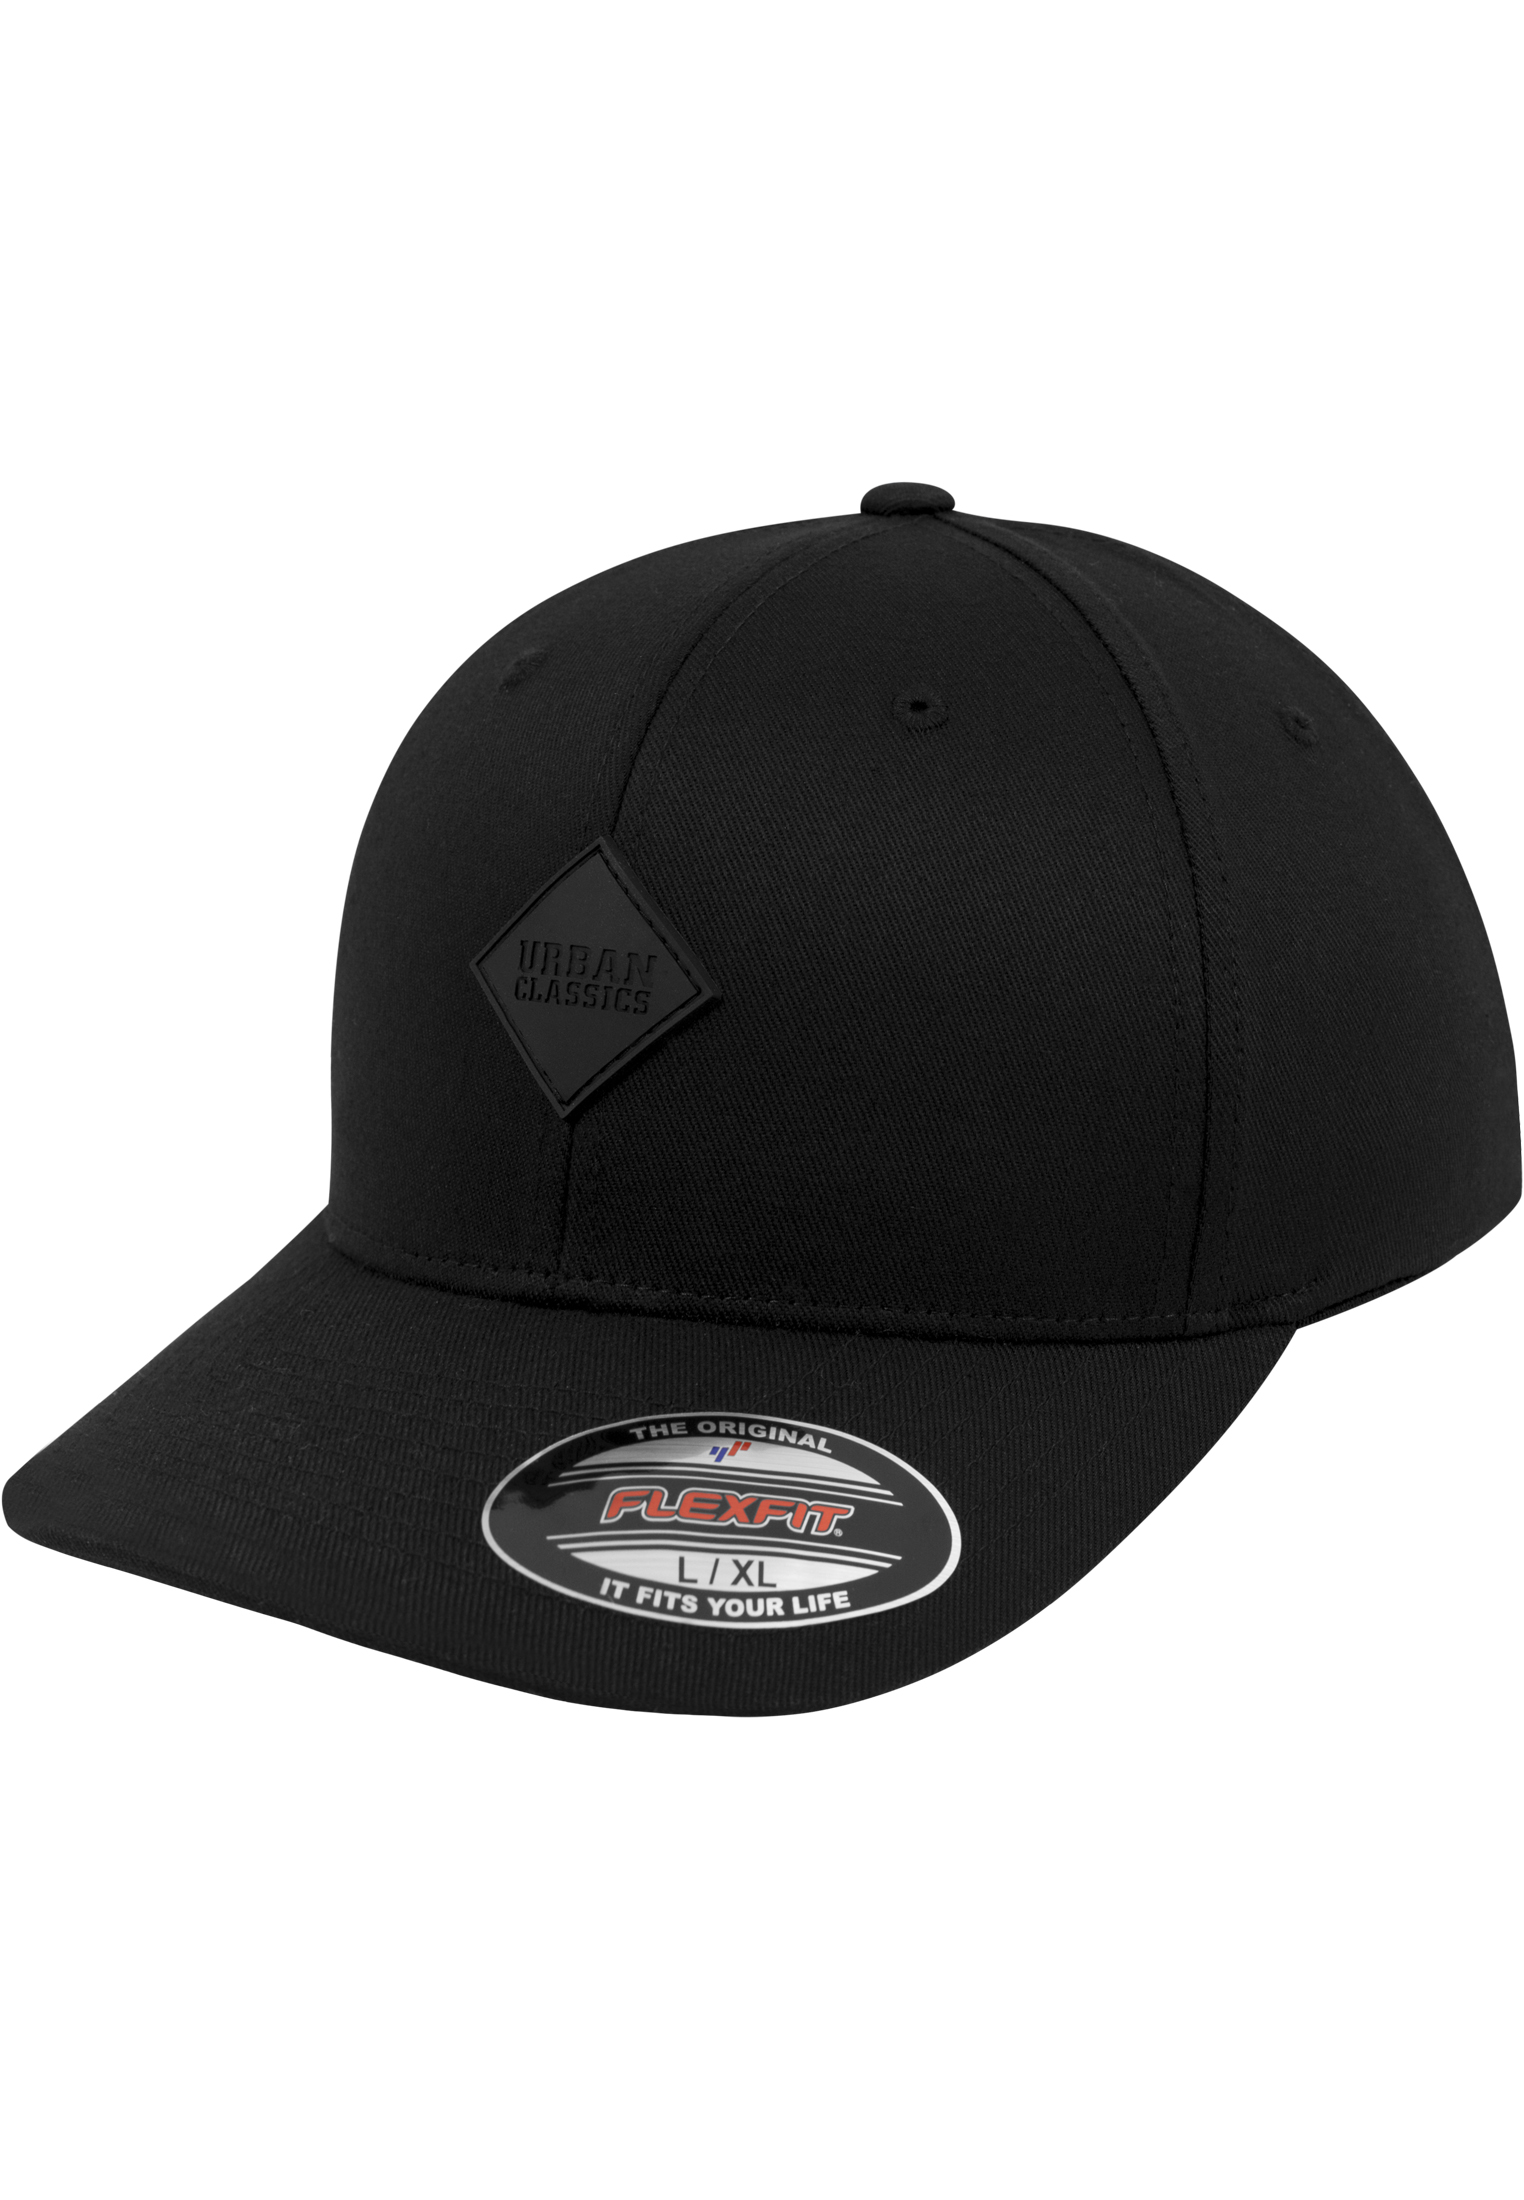 Patch Flexfit Synthetic leather cap blk/blk